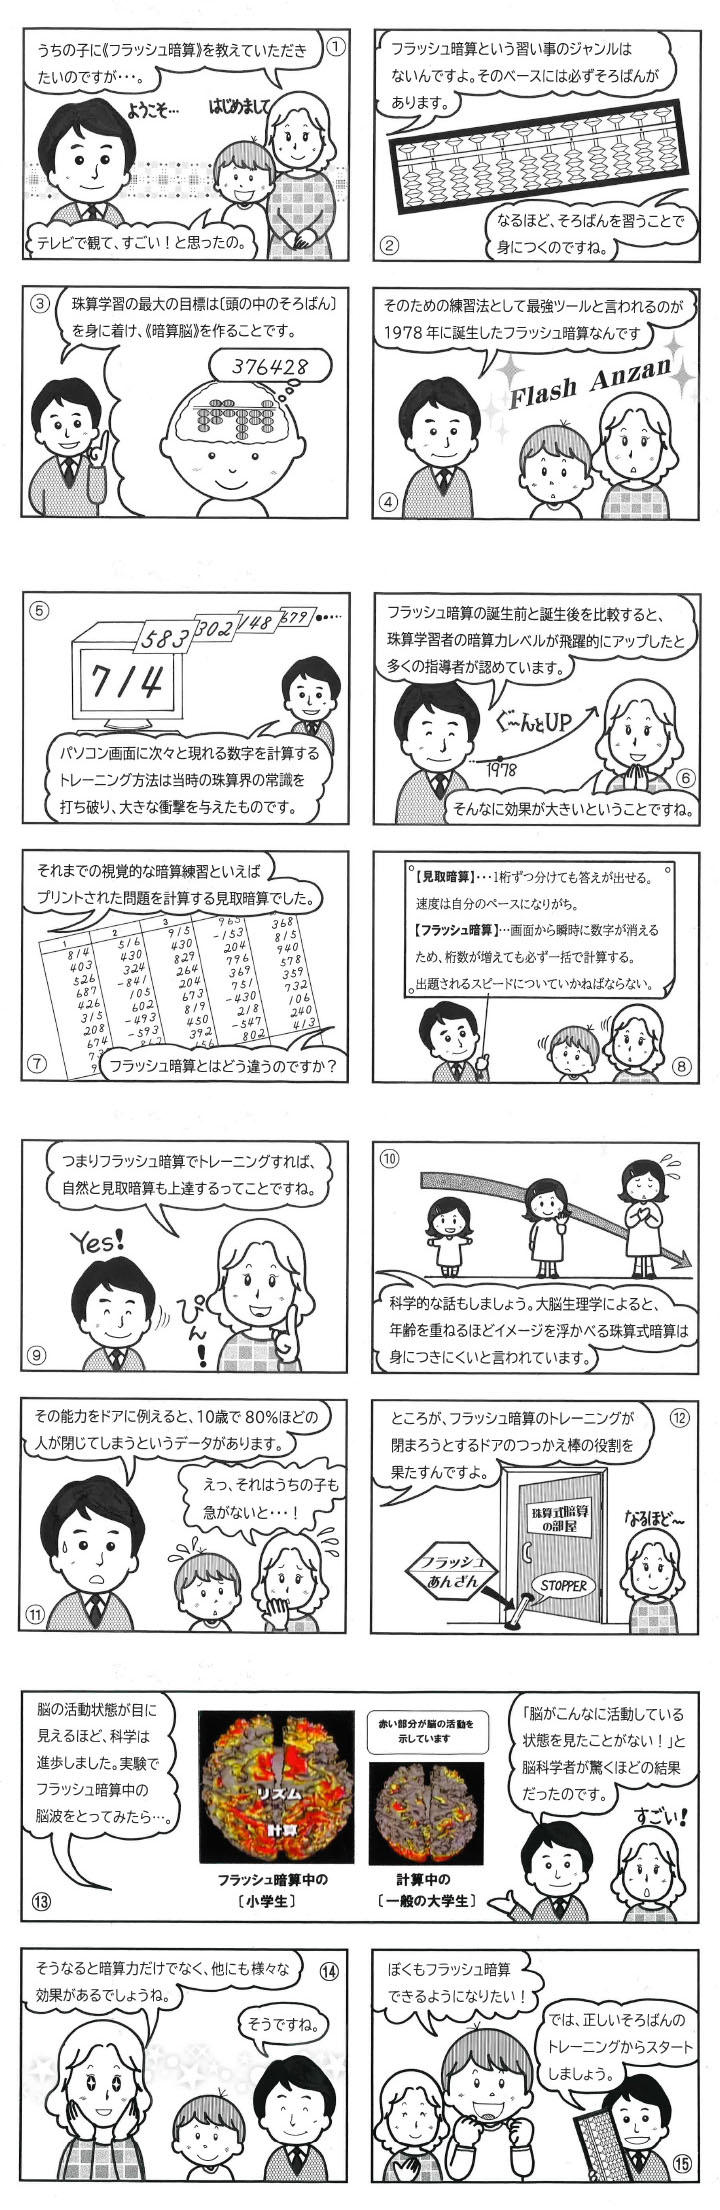 日本フラッシュ暗算協会 フラッシュ暗算の情報発信を行う公式サイト